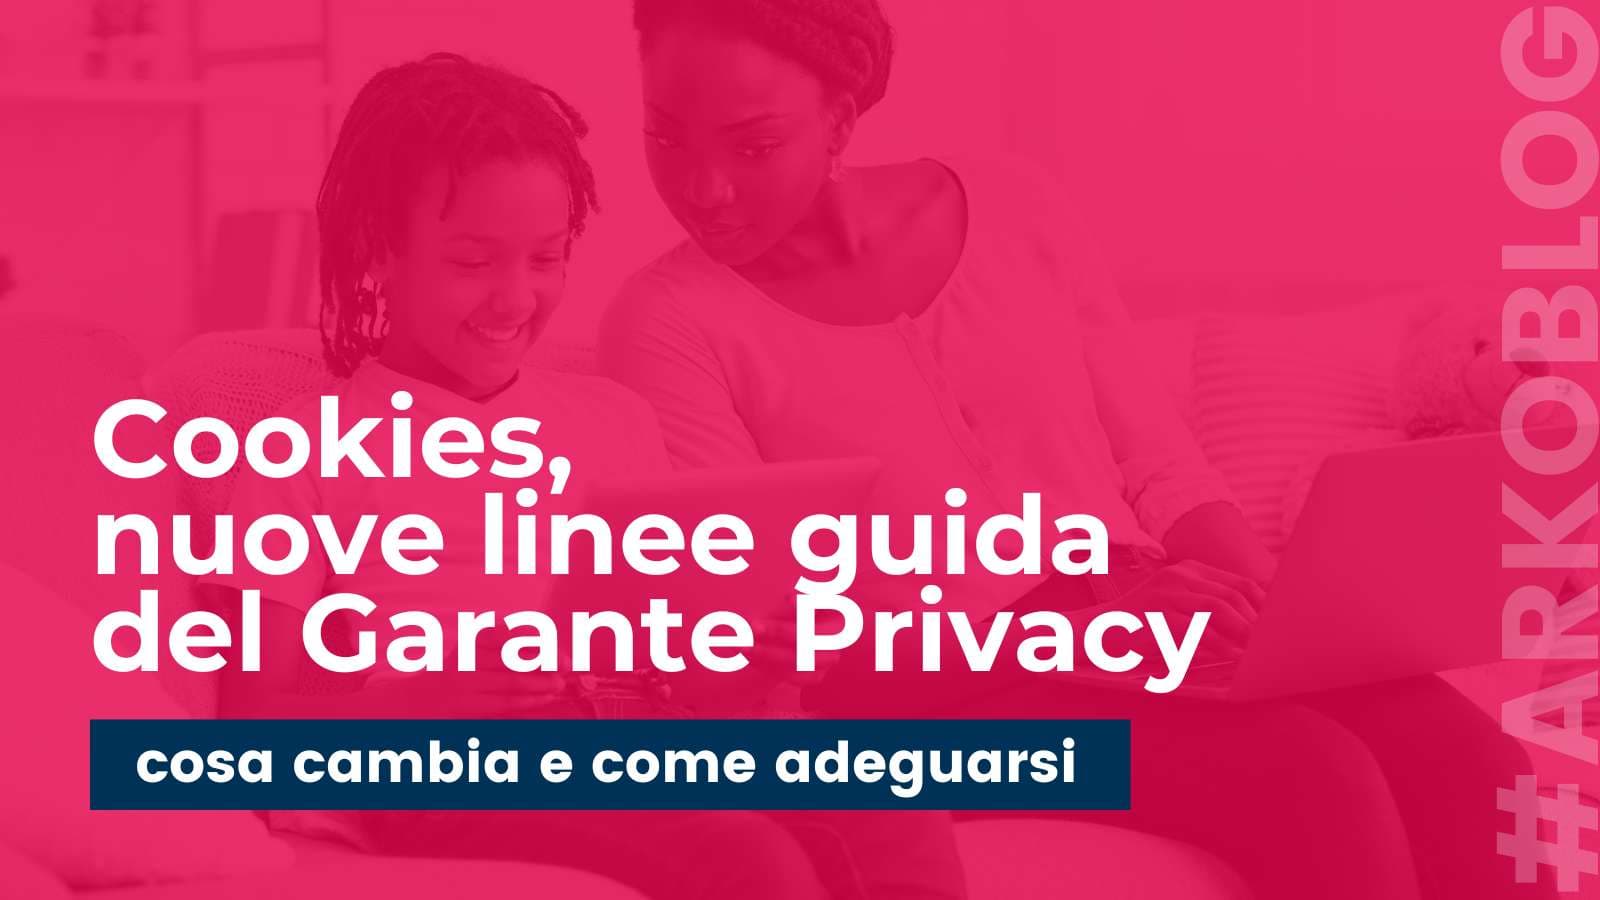 Cookie, nuove linee guida del Garante Privacy: cosa cambia e come adeguarsi